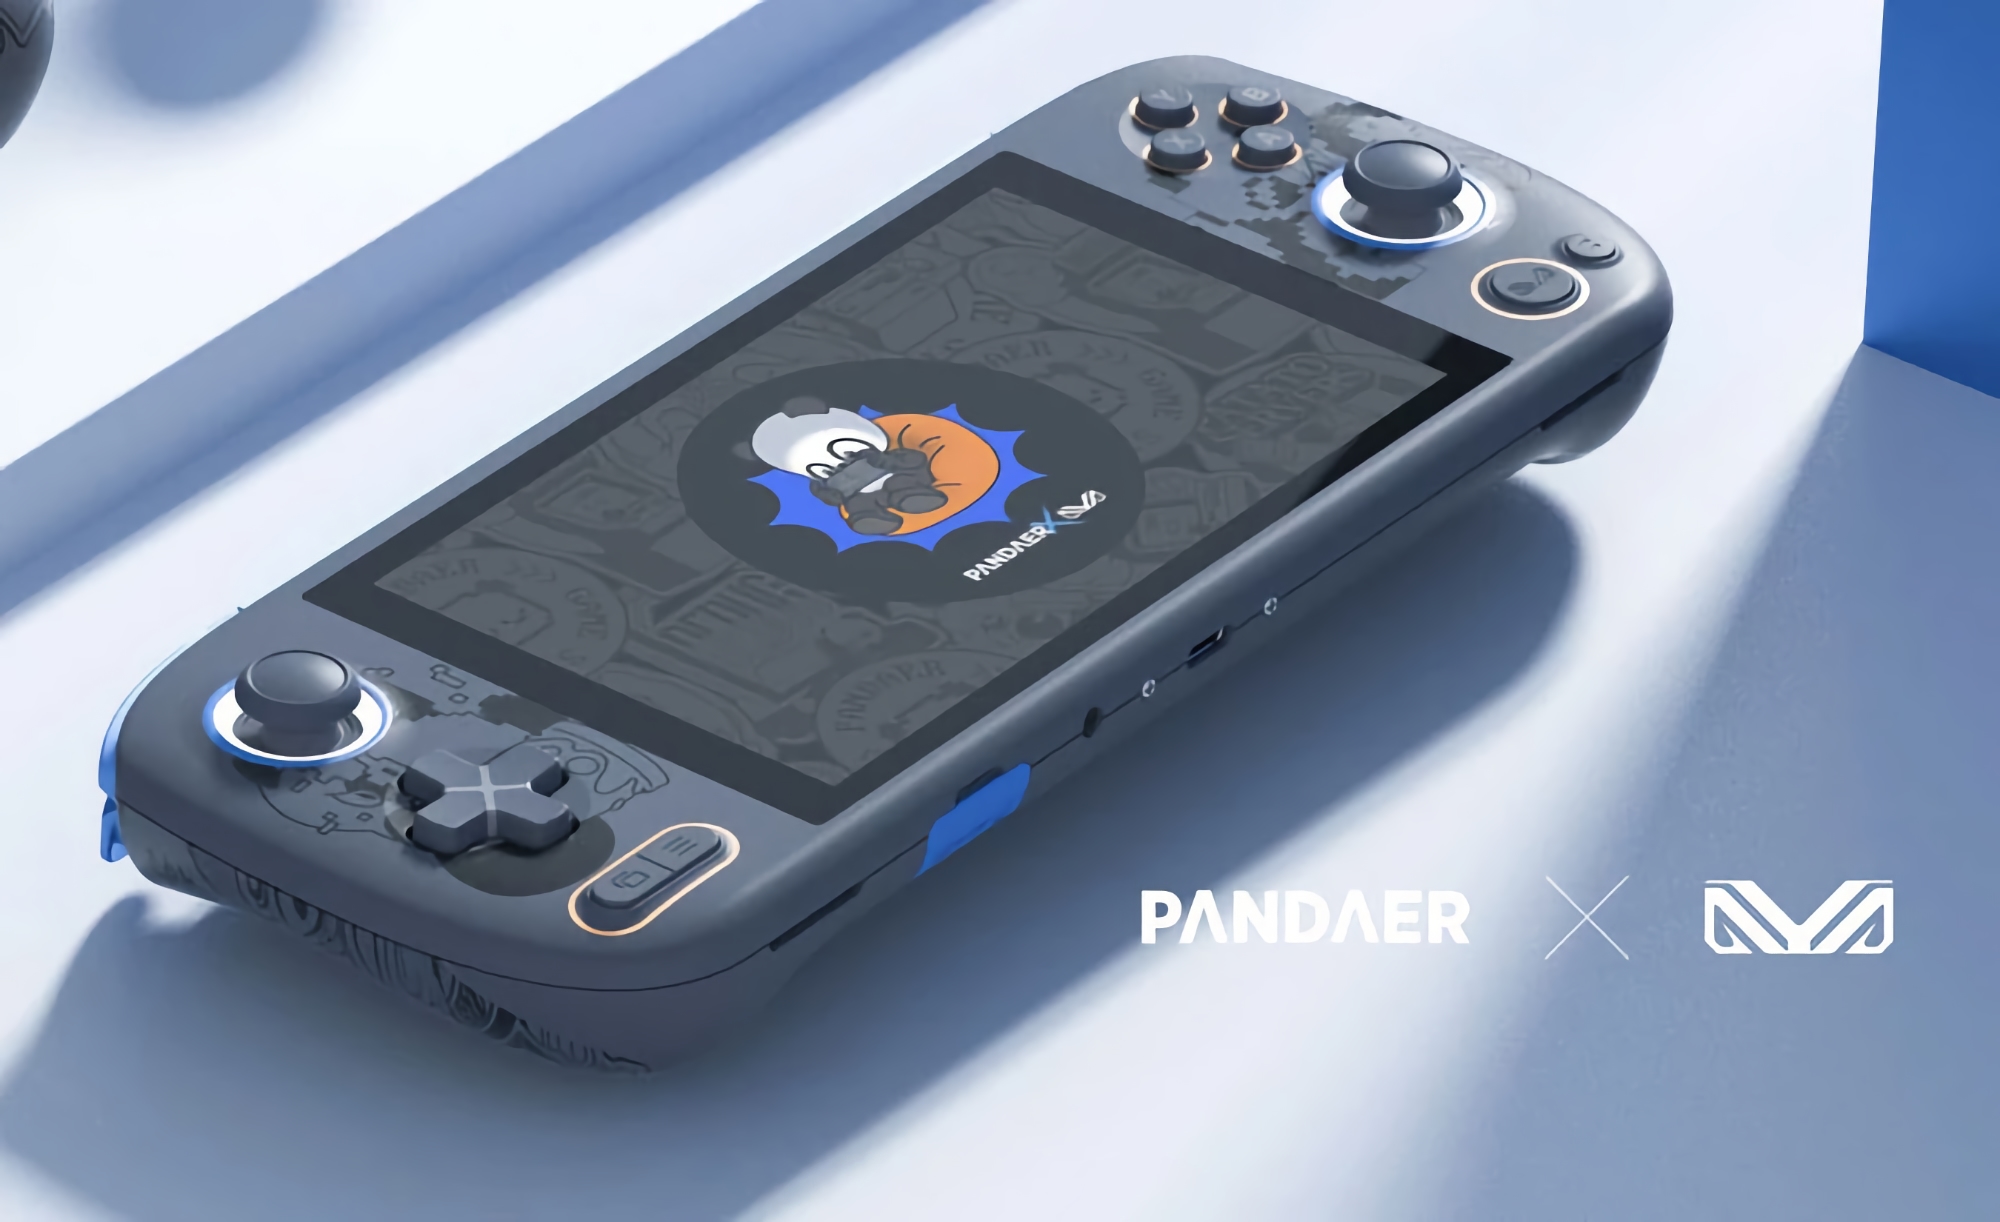 Concorrente di Nintendo Switch: Meizu introdurrà una console di gioco a marchio PANDAER il 9 giugno